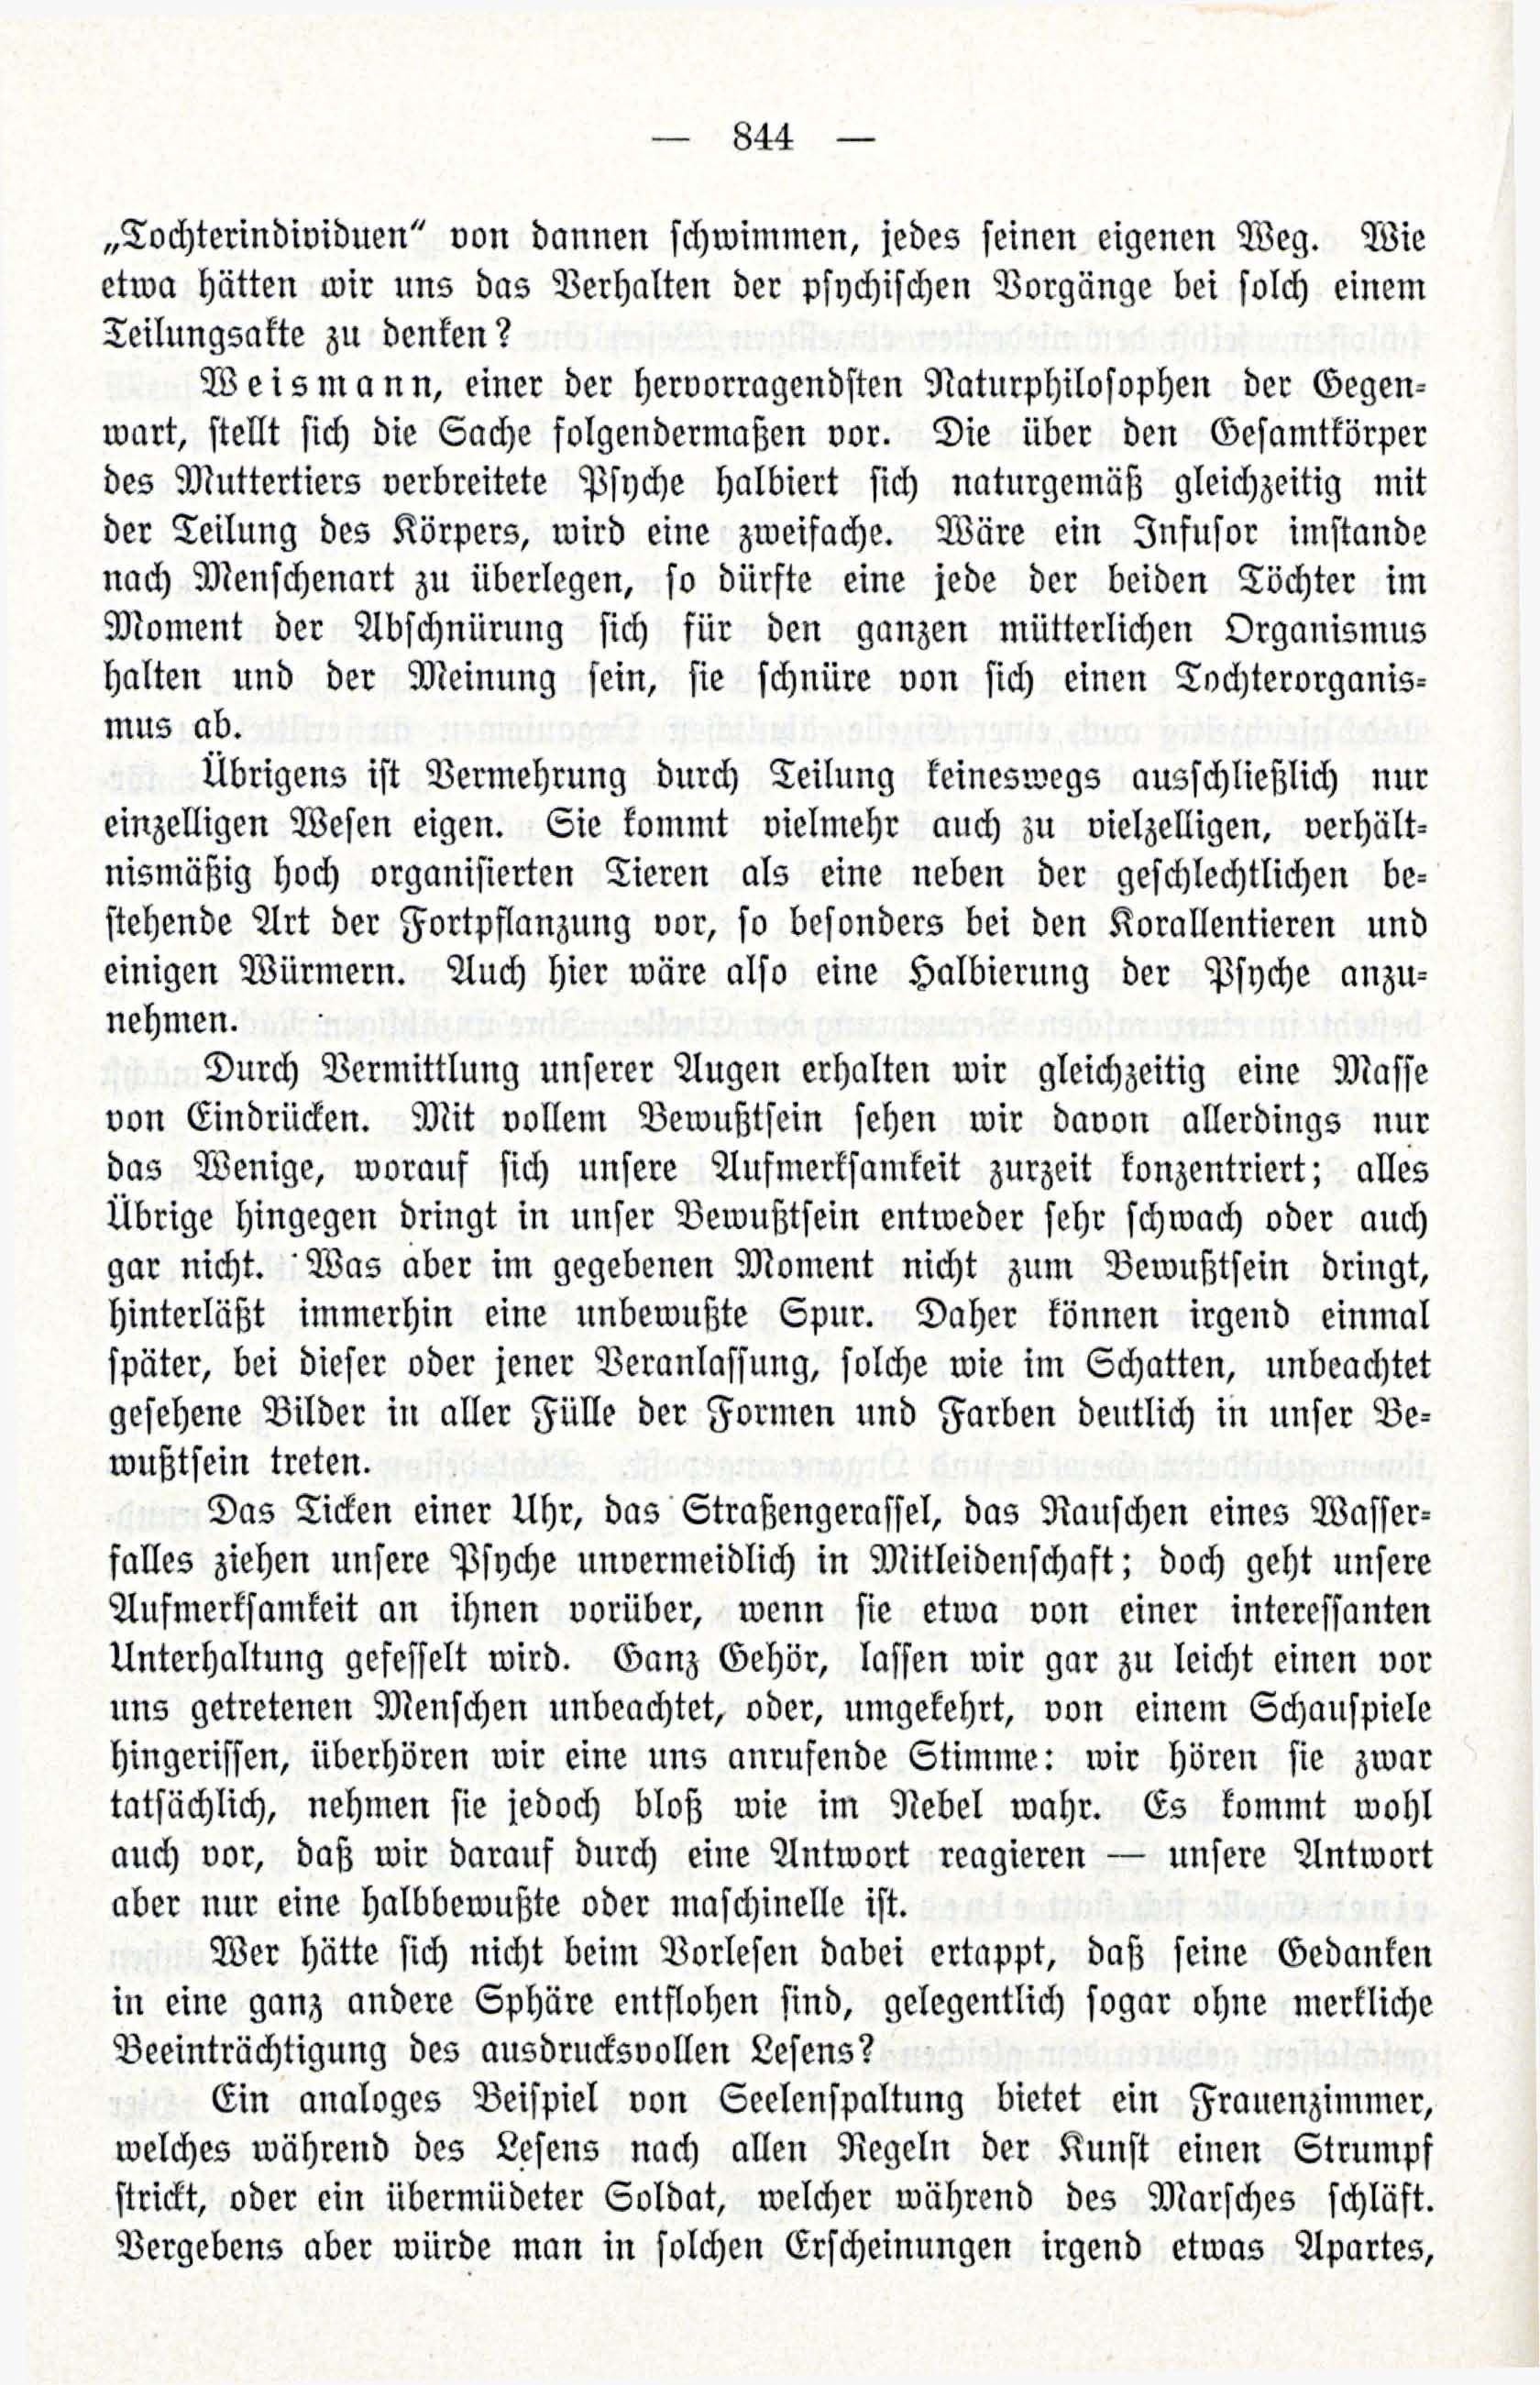 Deutsche Monatsschrift für Russland [3/12] (1914) | 60. (844) Main body of text